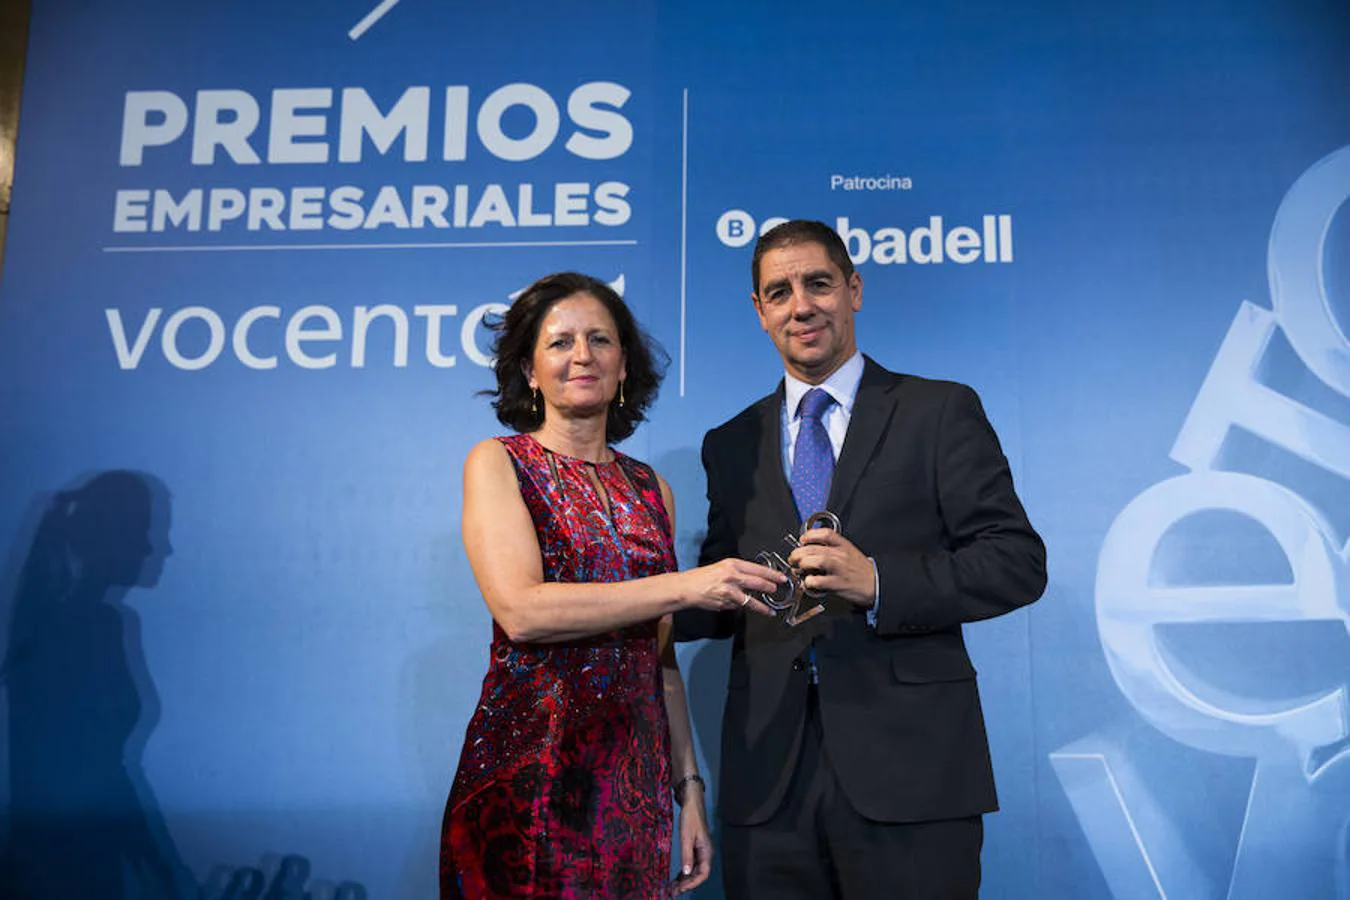 Juan Emilio Maíllo Belda (Telefónica) recibe el Premio Empresarial Vocento a los resultados.